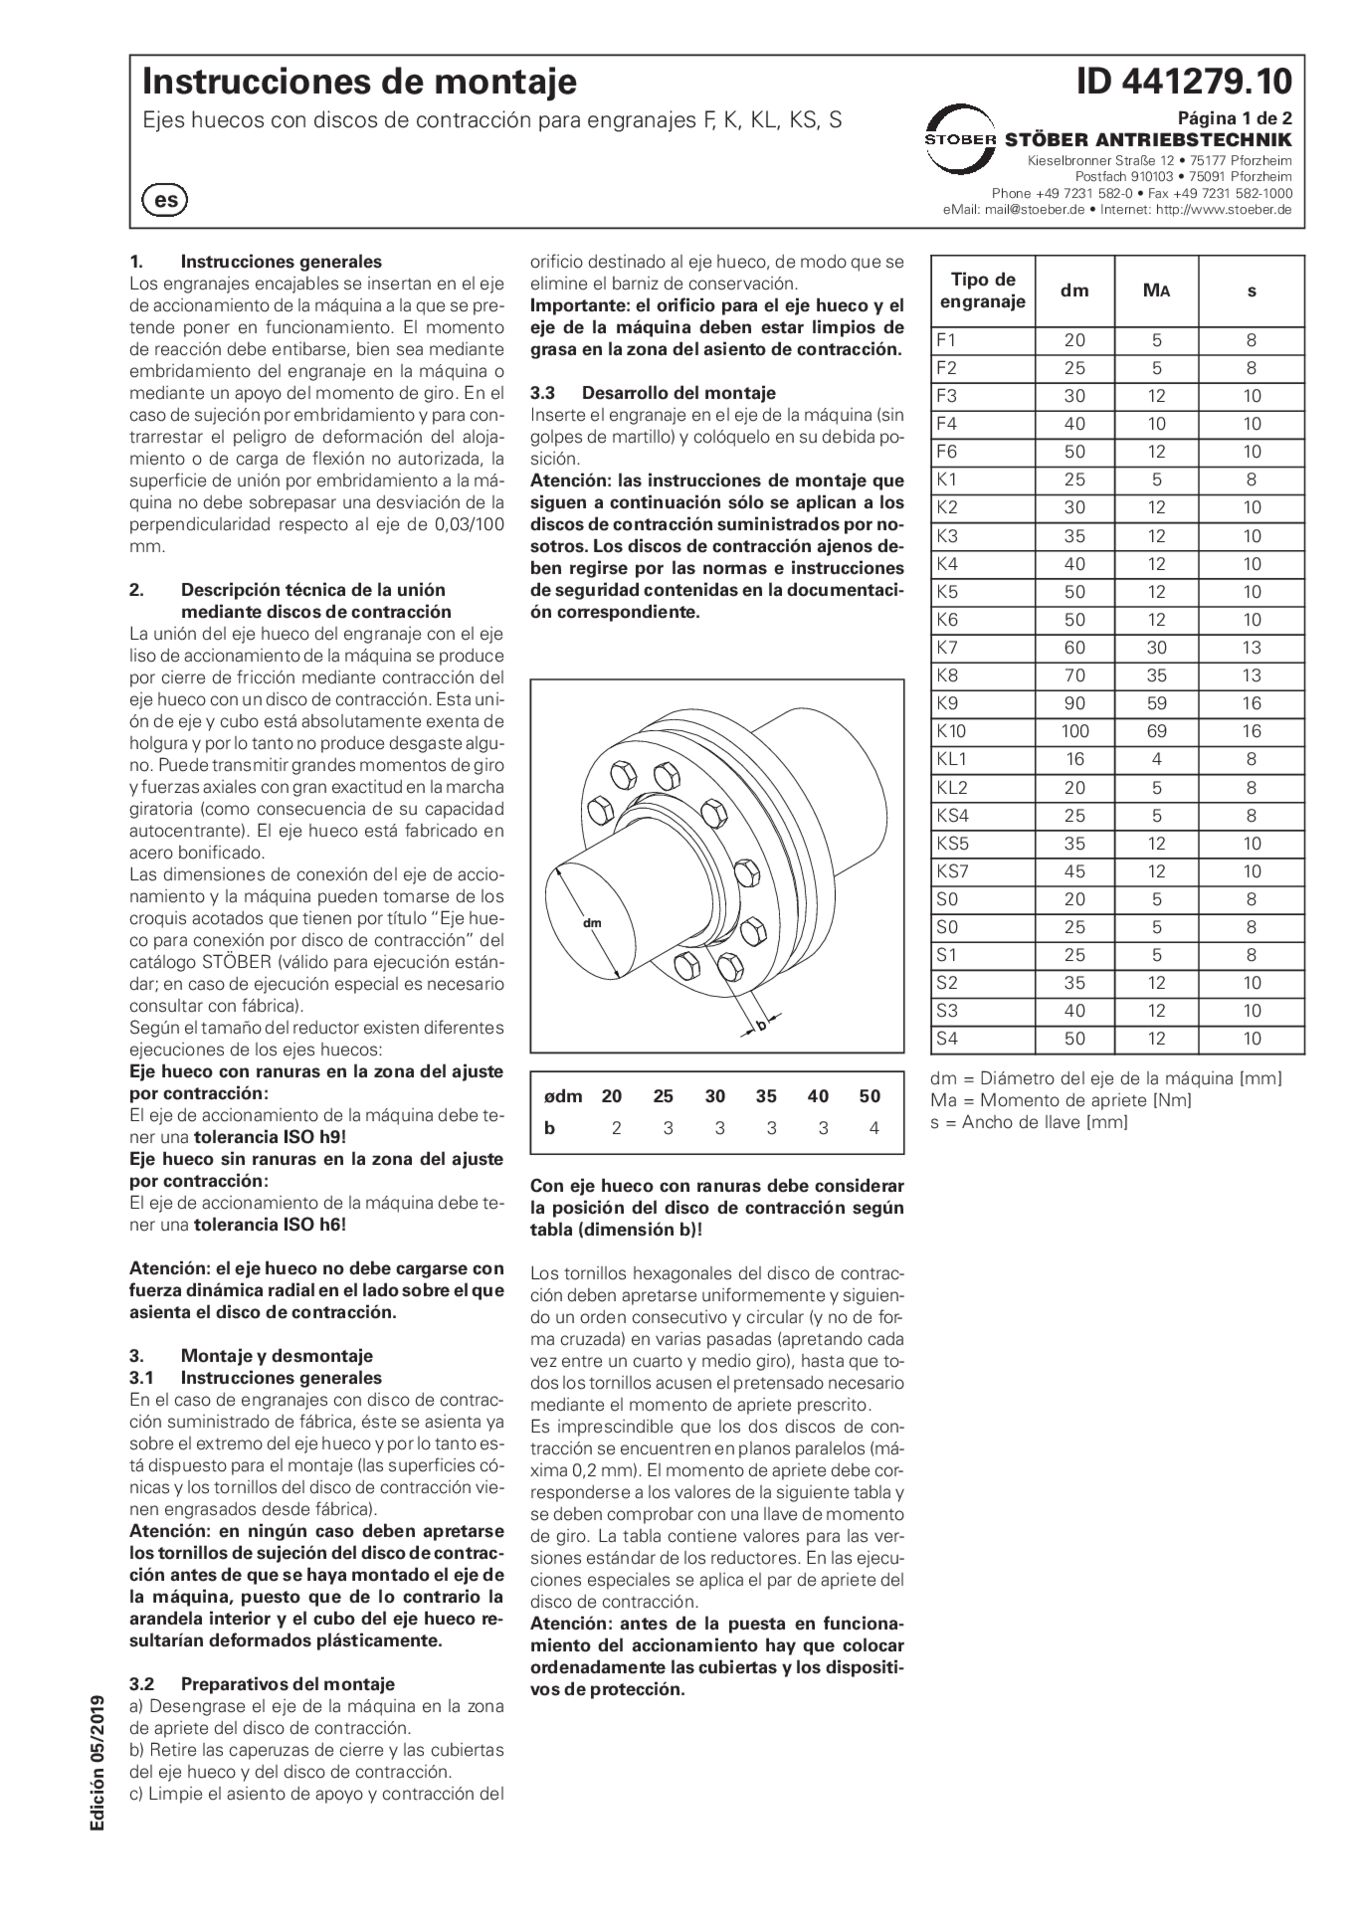 Instrucciones de montaje Ejes huecos con discos de contraccion para engranajes F K KL KS S